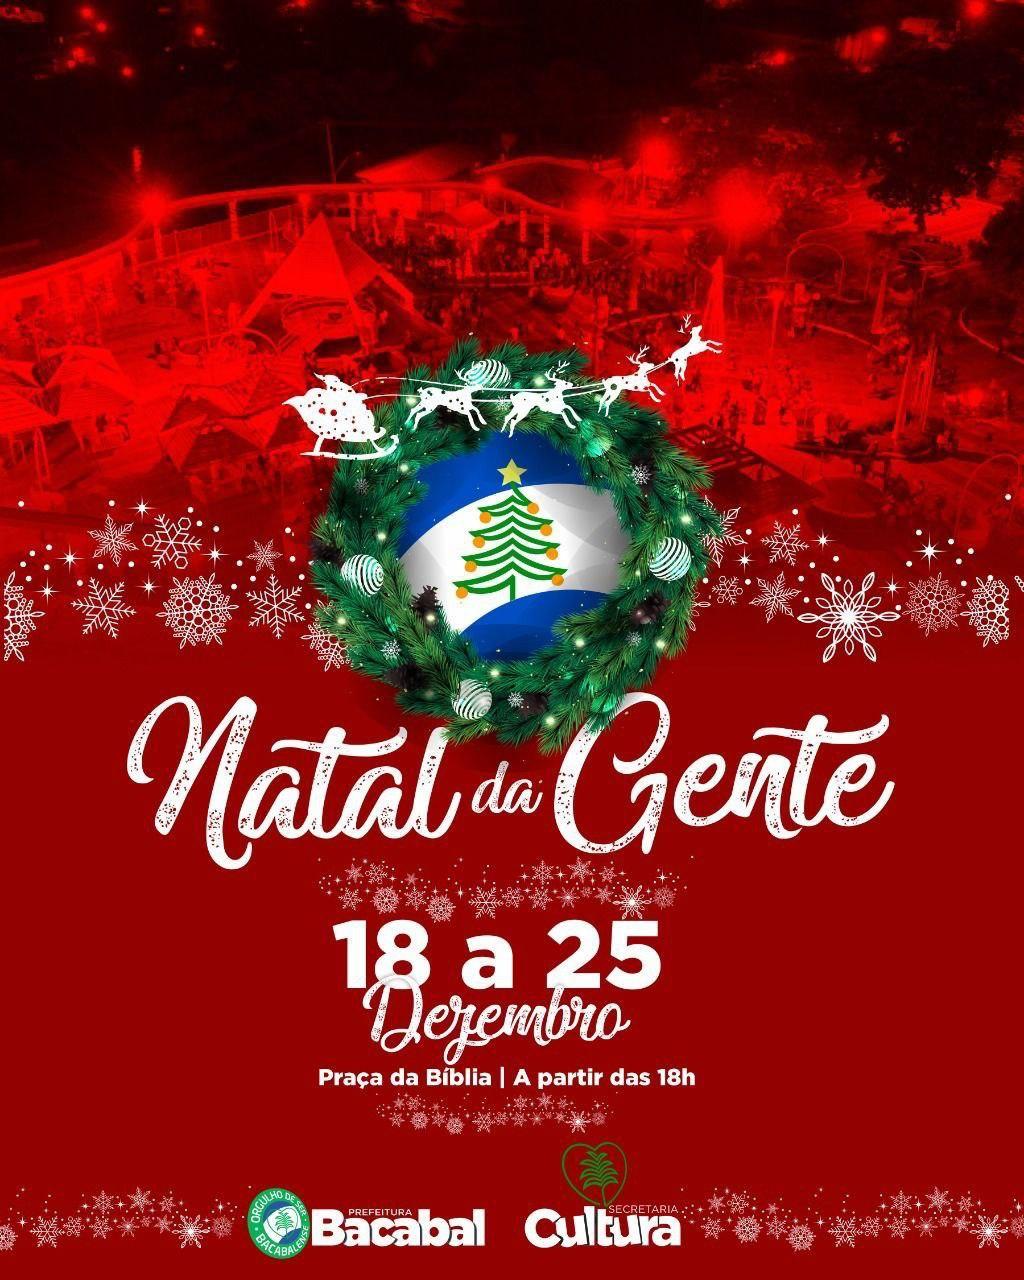 Natal da Gente: Prefeitura de Bacabal divulga programação da grande festa